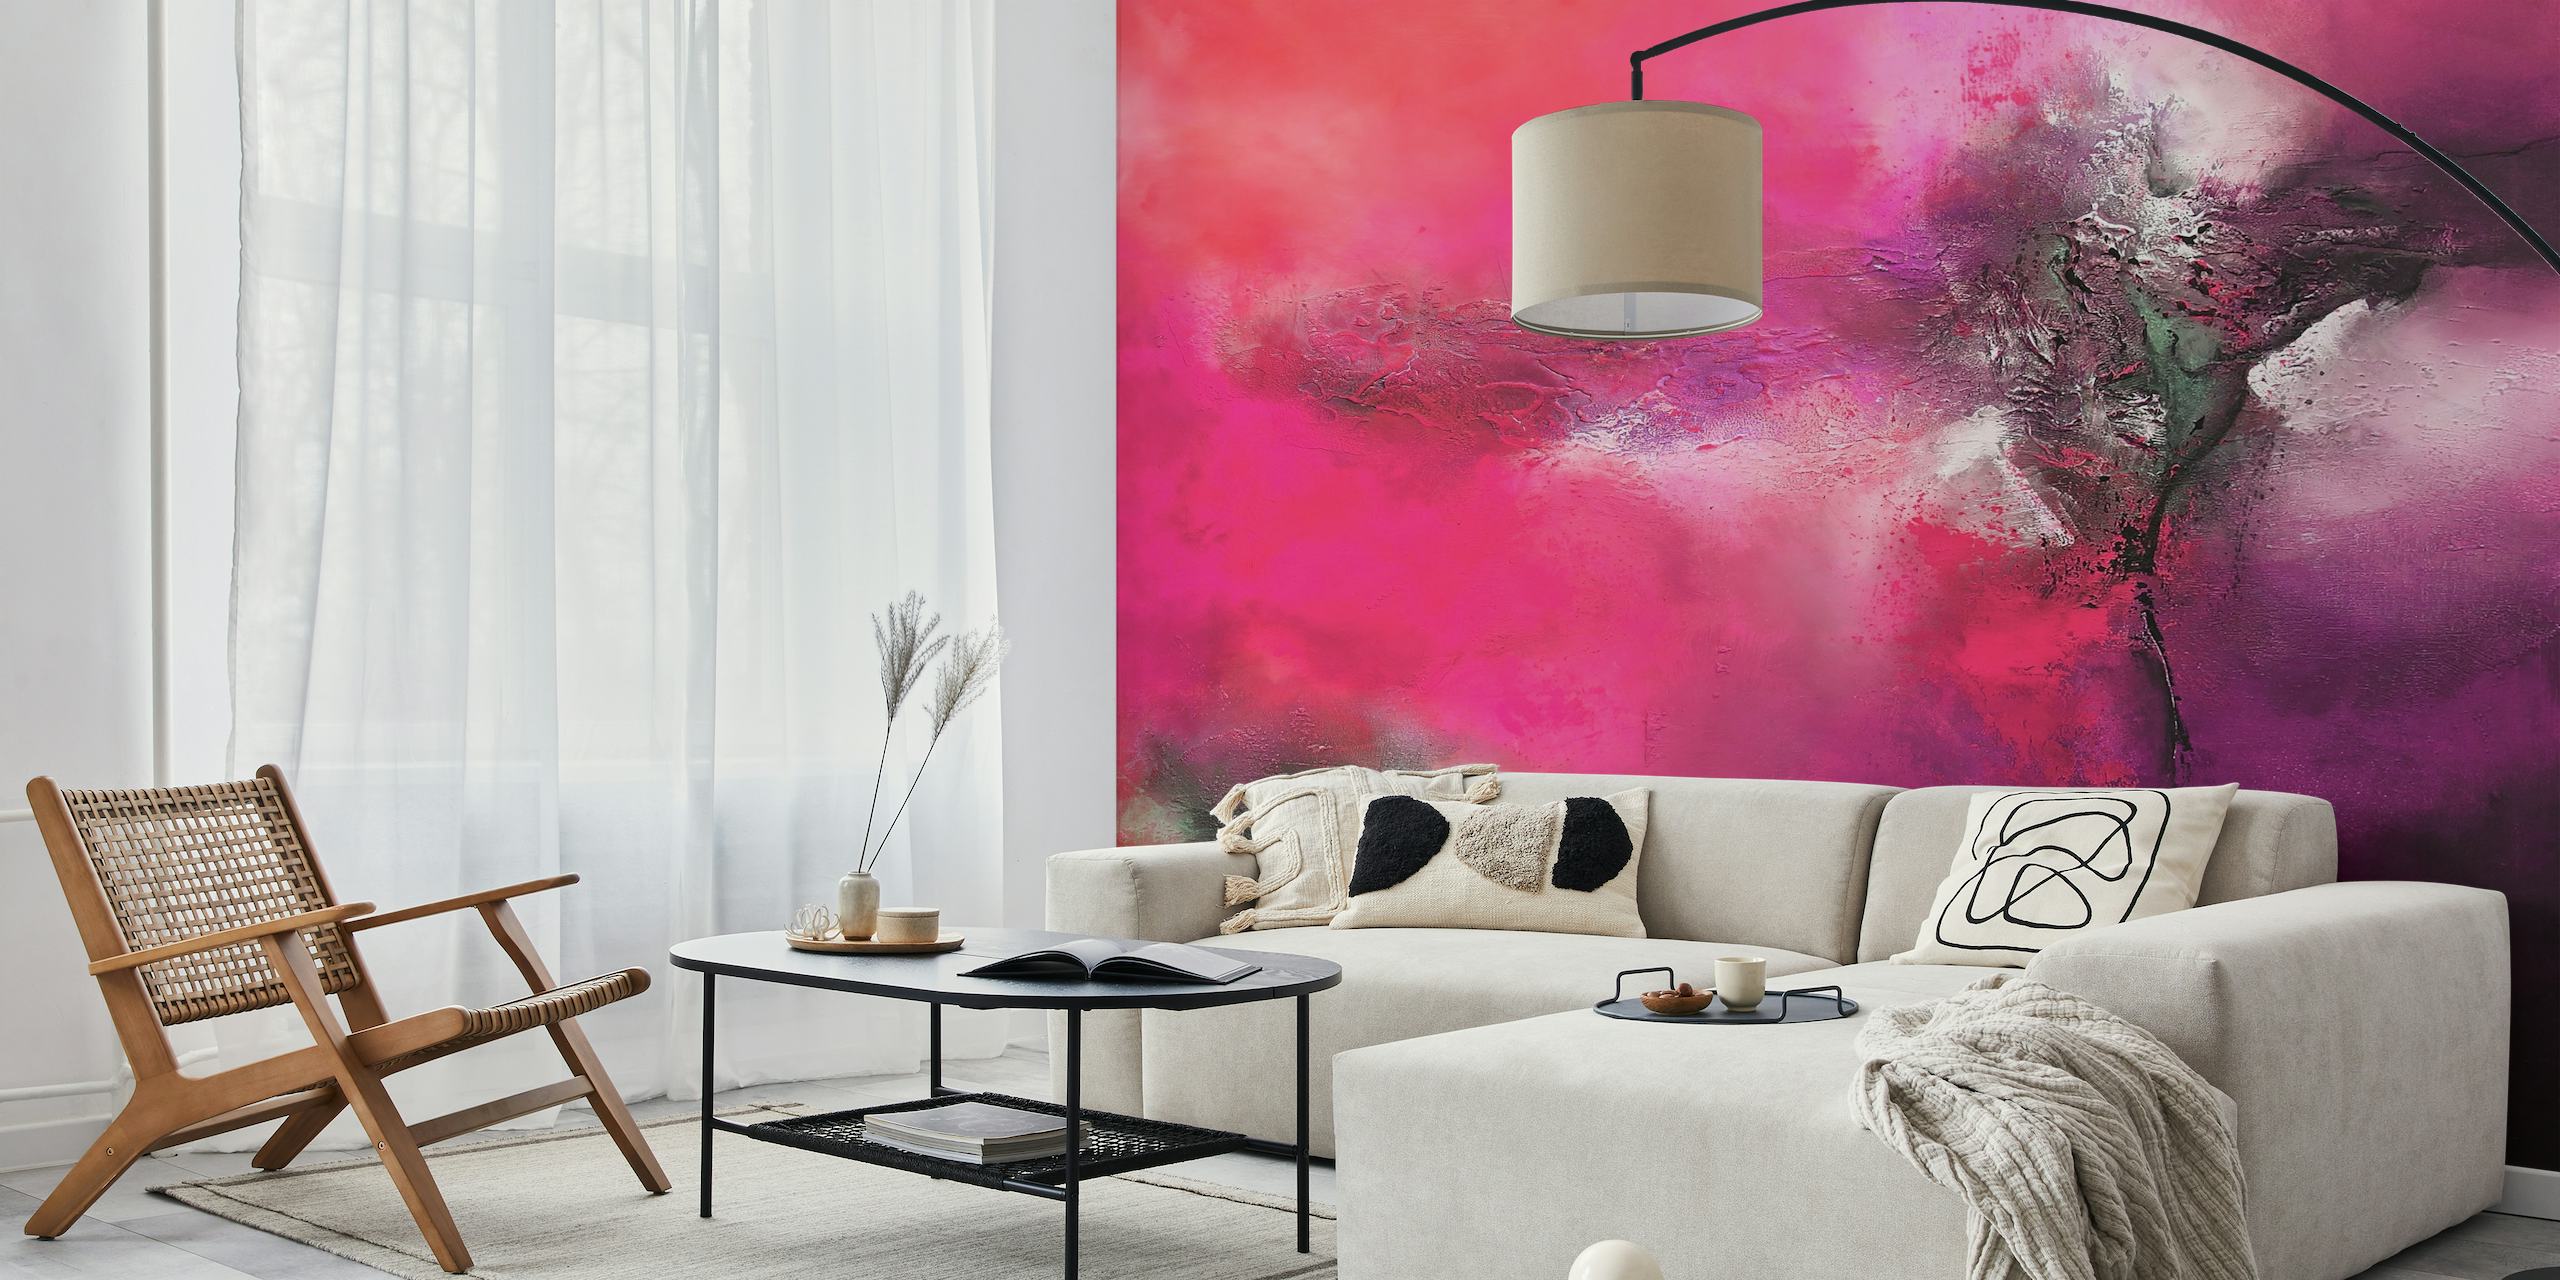 Abstract fotobehang met levendige roze en grijze tinten, die lijken op expressieve kunst